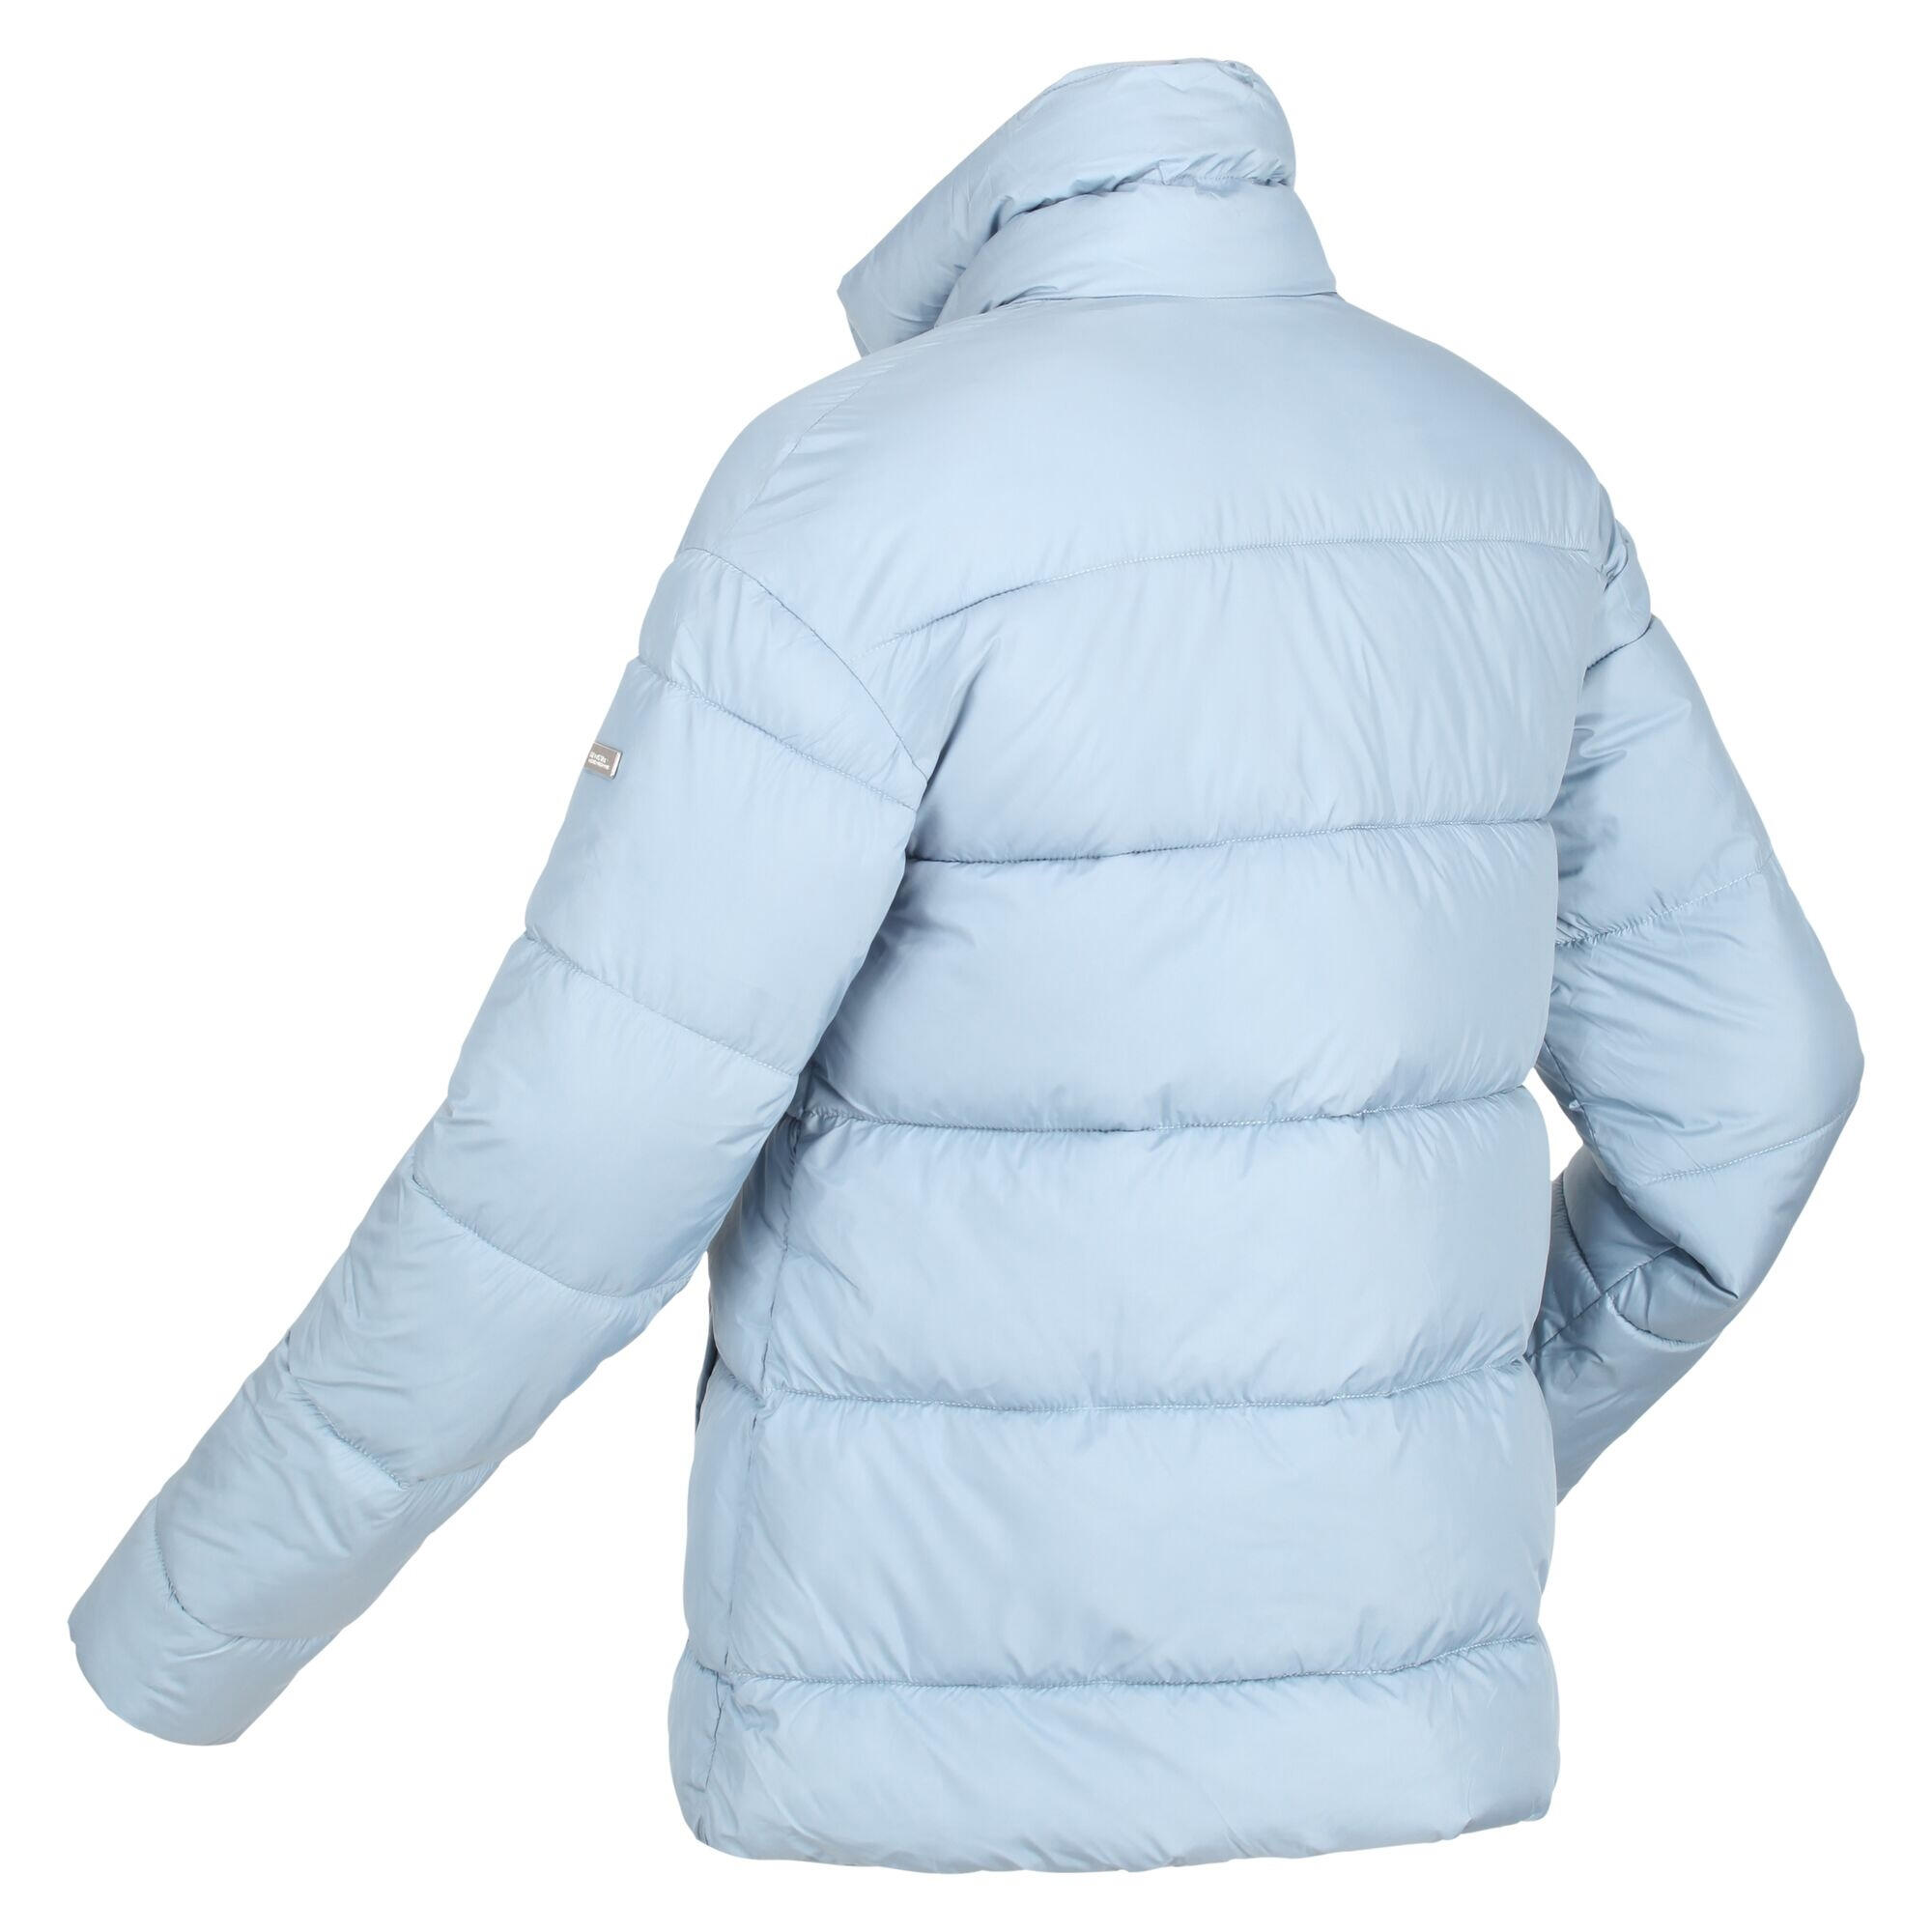 Womens/Ladies Raegan Puffer Jacket (Ice Grey) 4/5